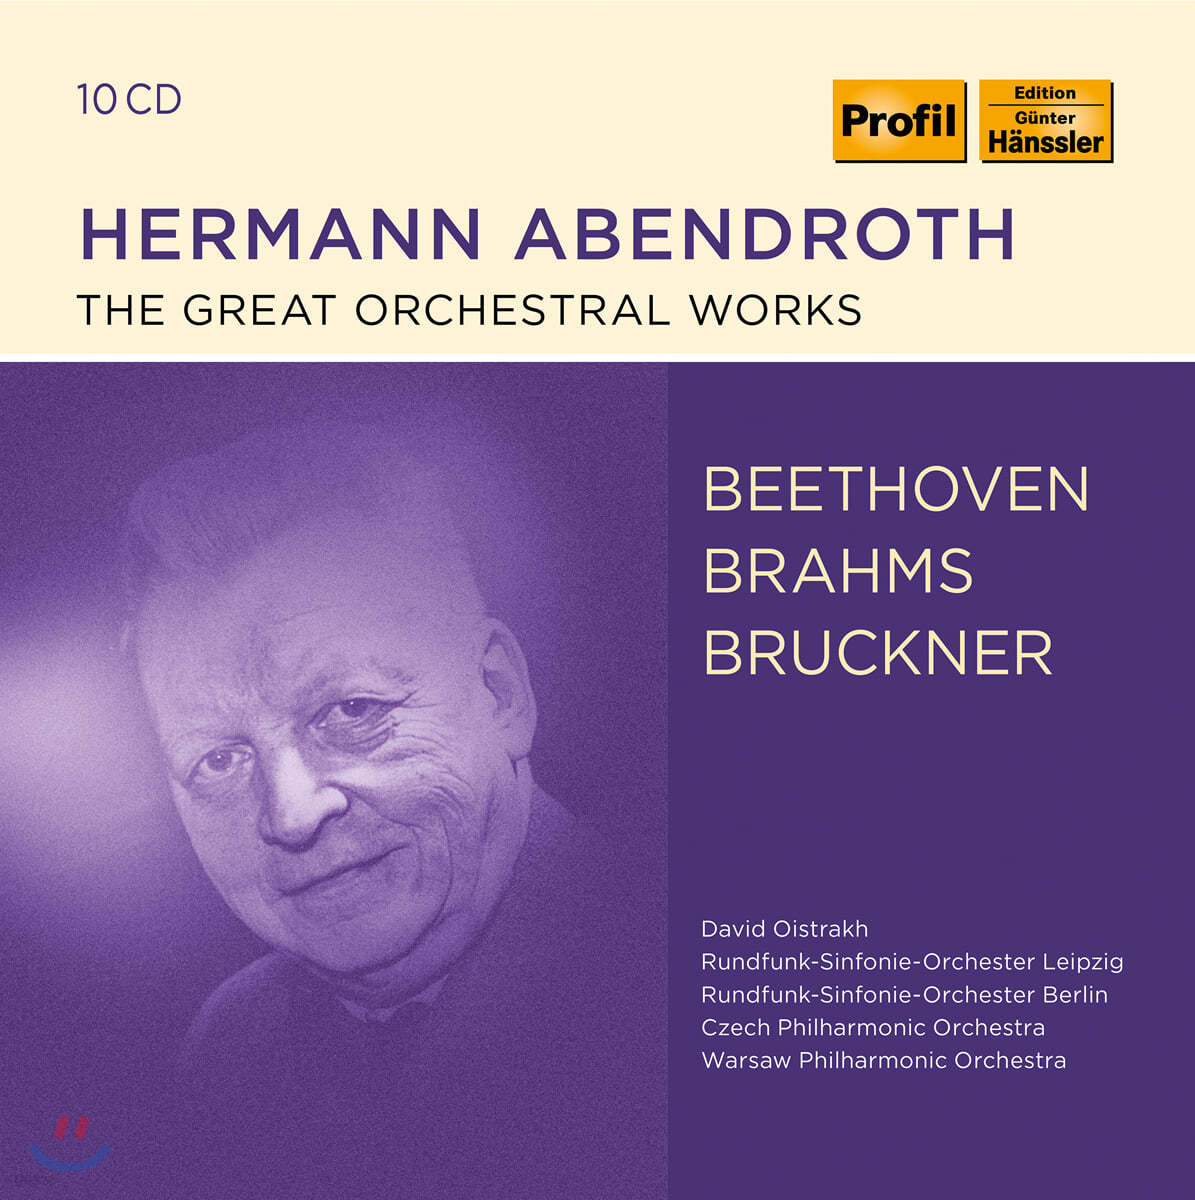 헤르만 아벤트로트 관현악 작품집 - 베토벤 / 브람스 / 브루크너 (Hermann Abendroth - The Great Orchestral Works)